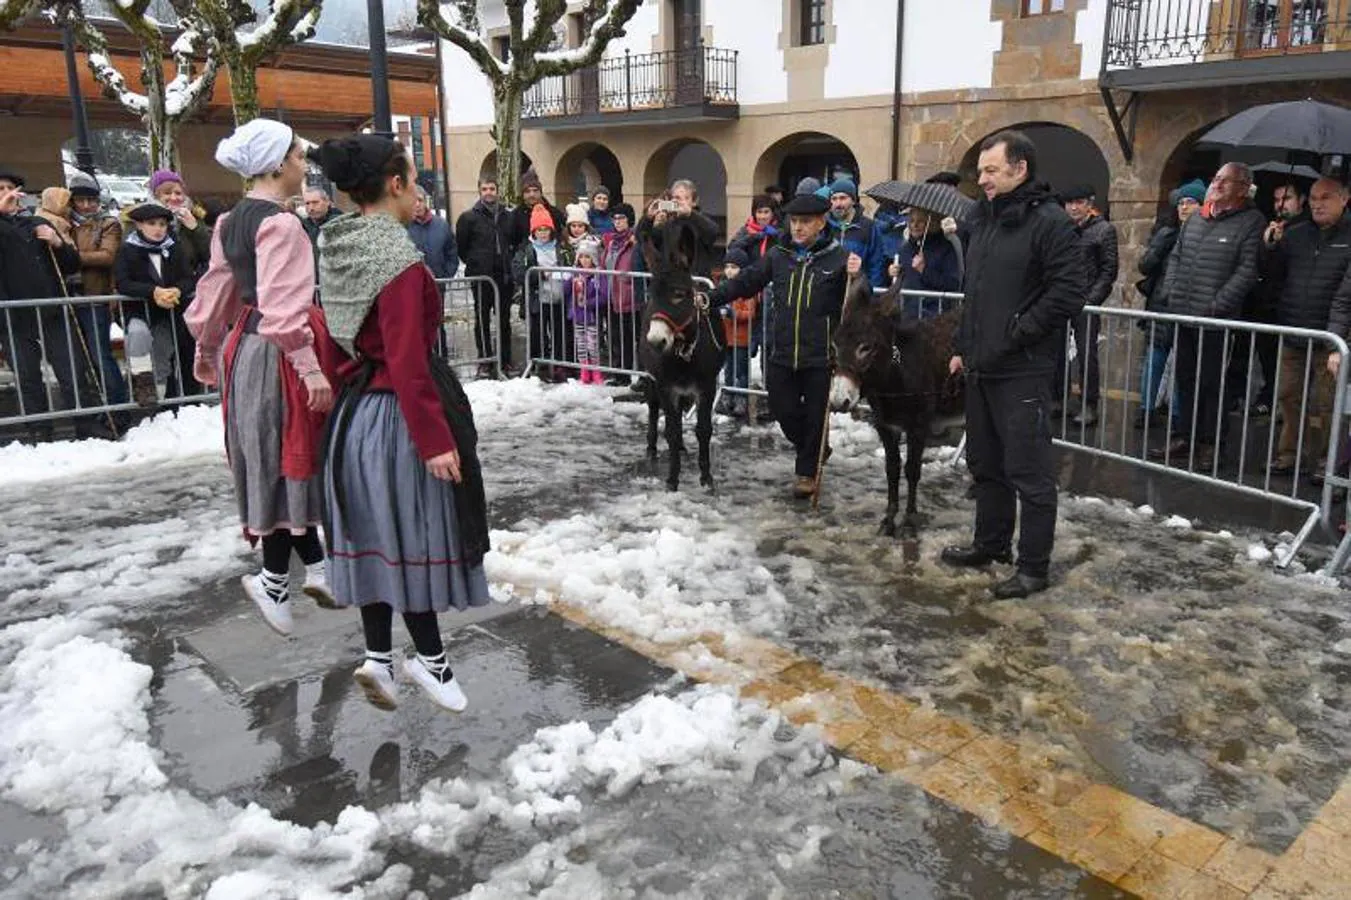 La tradición del Astotxo Eguna se cumplió en Lazkao pese a la nieve que cubría las calles y las gélidas temperaturas